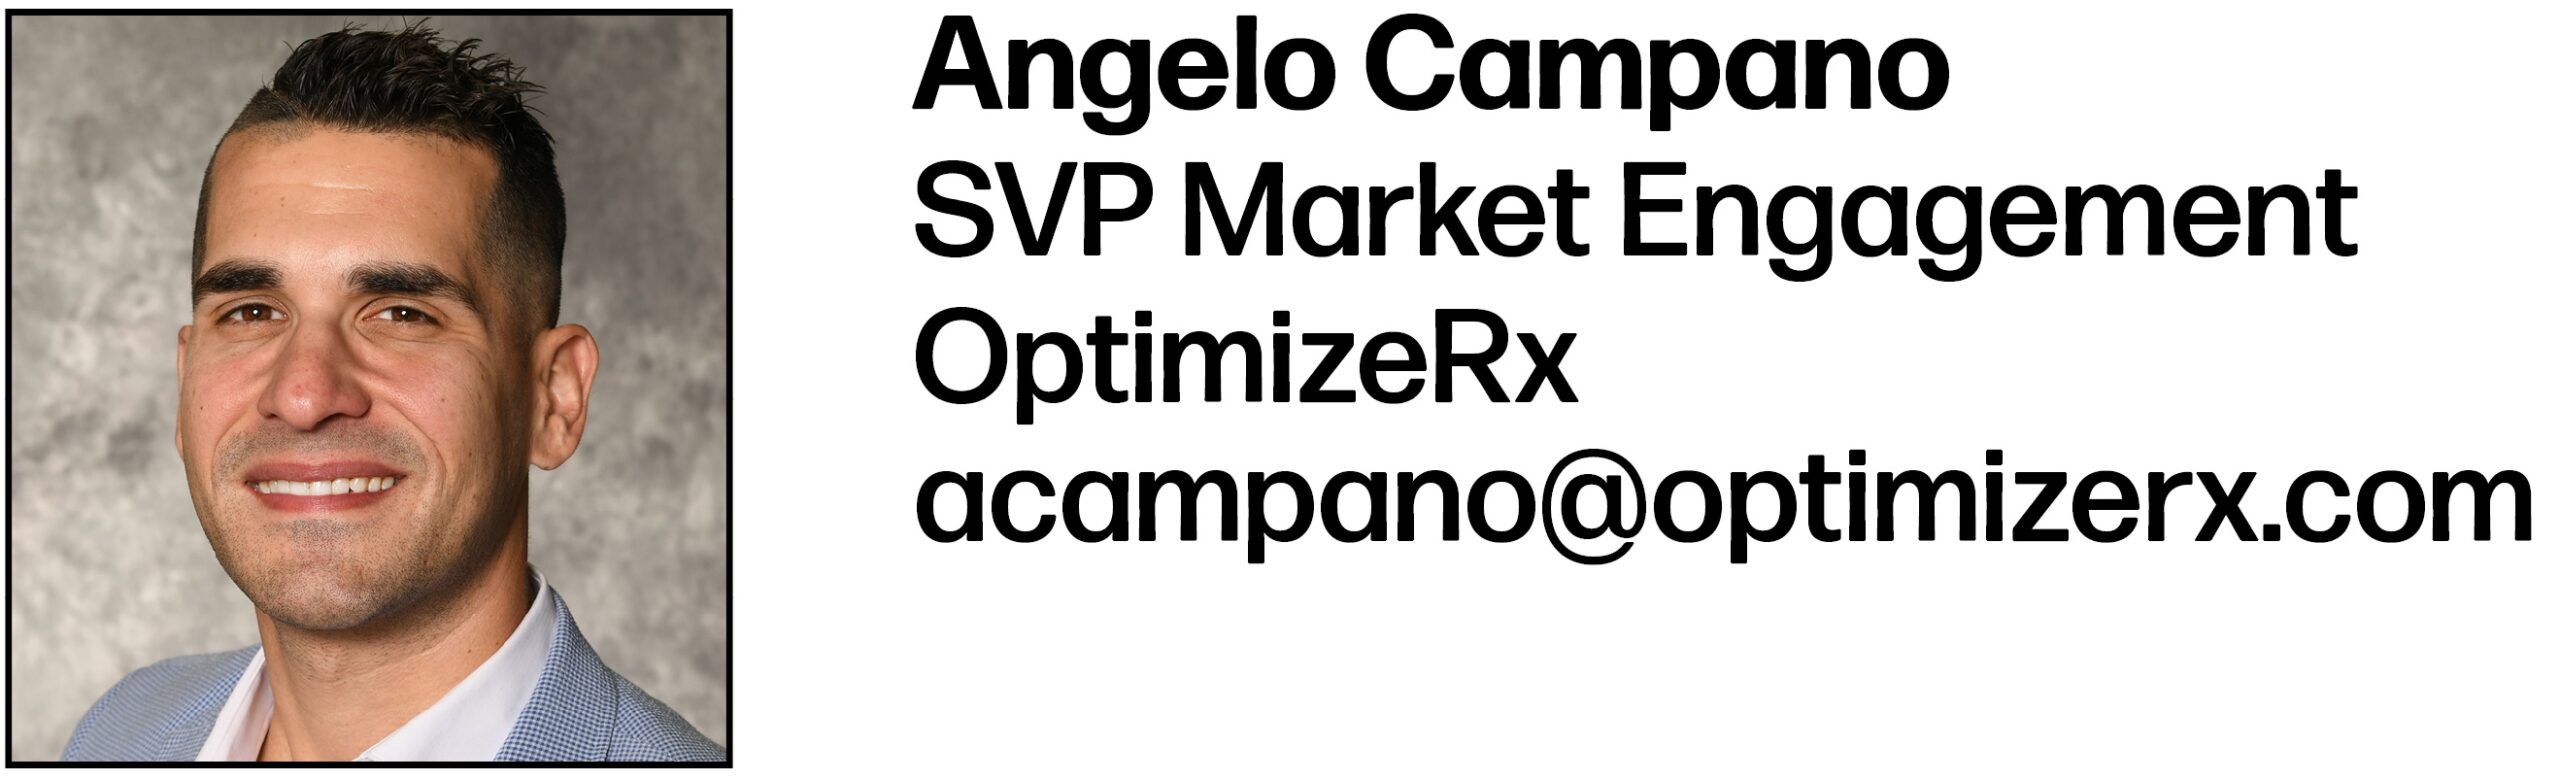 Angelo Campano SVP Market Engagement OptimizeRx acampano@optimizerx.com 